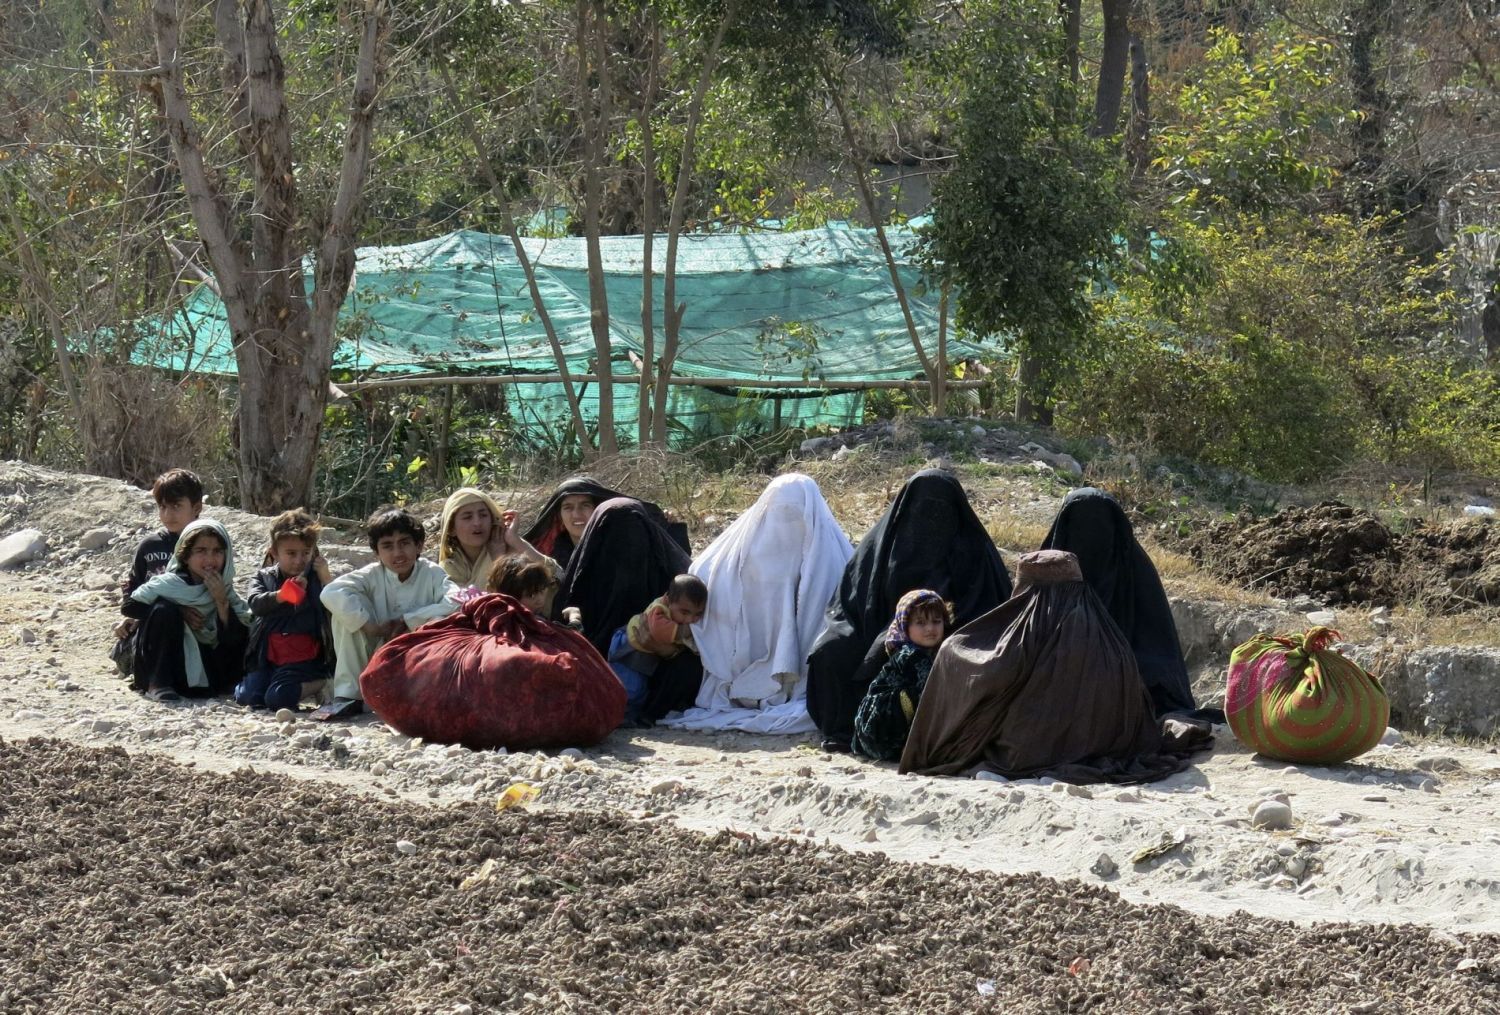 Zwangere vrouwen grootste slachtoffer van Pakistaanse conflicten